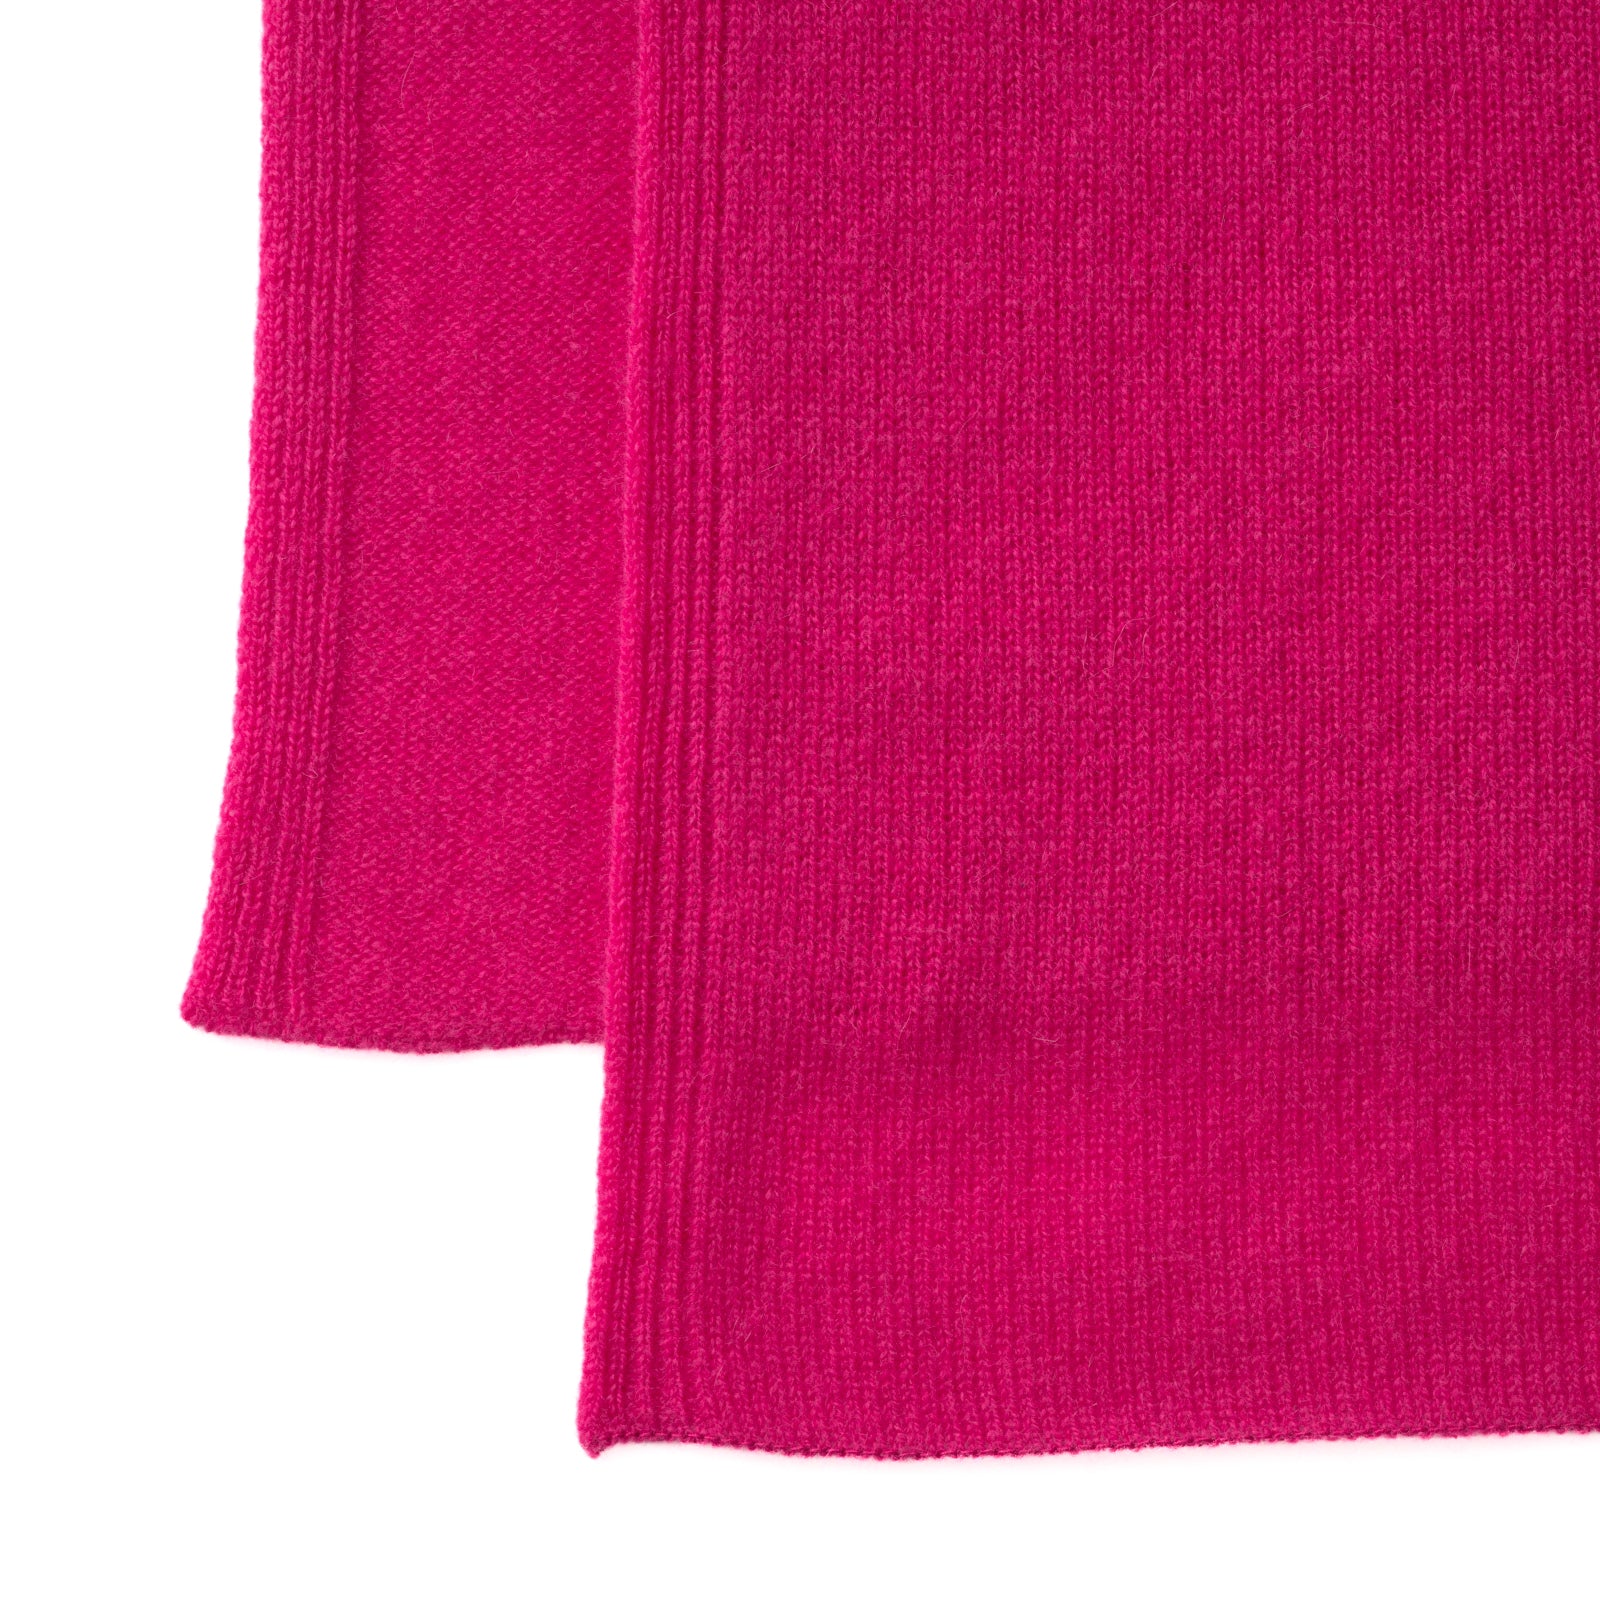 Cashmere knit stole (regular size)